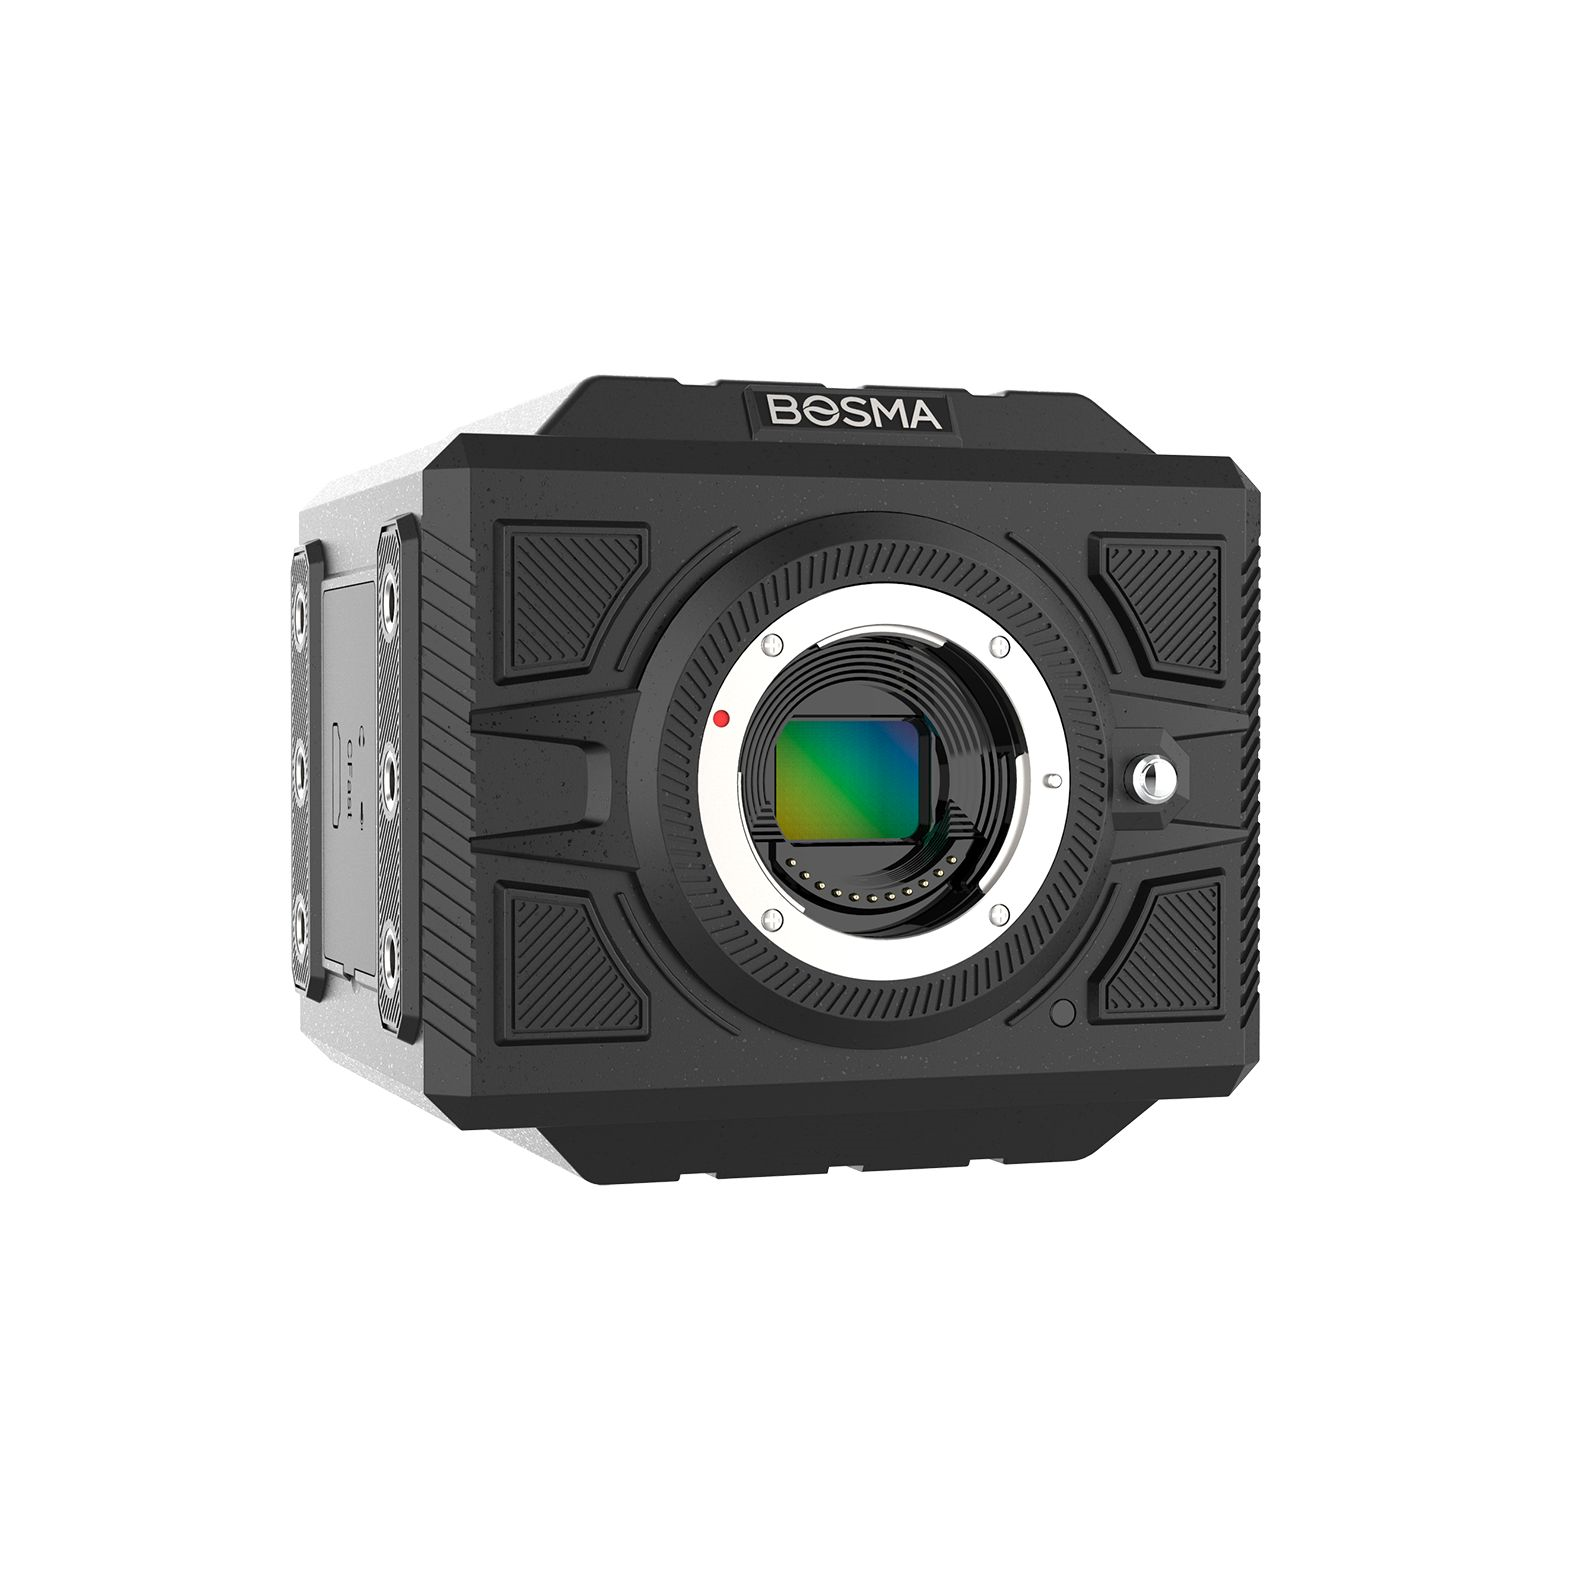 博冠 8K超高清摄像机 G1 pro  网络直播 无人机航拍 远程教学 监控